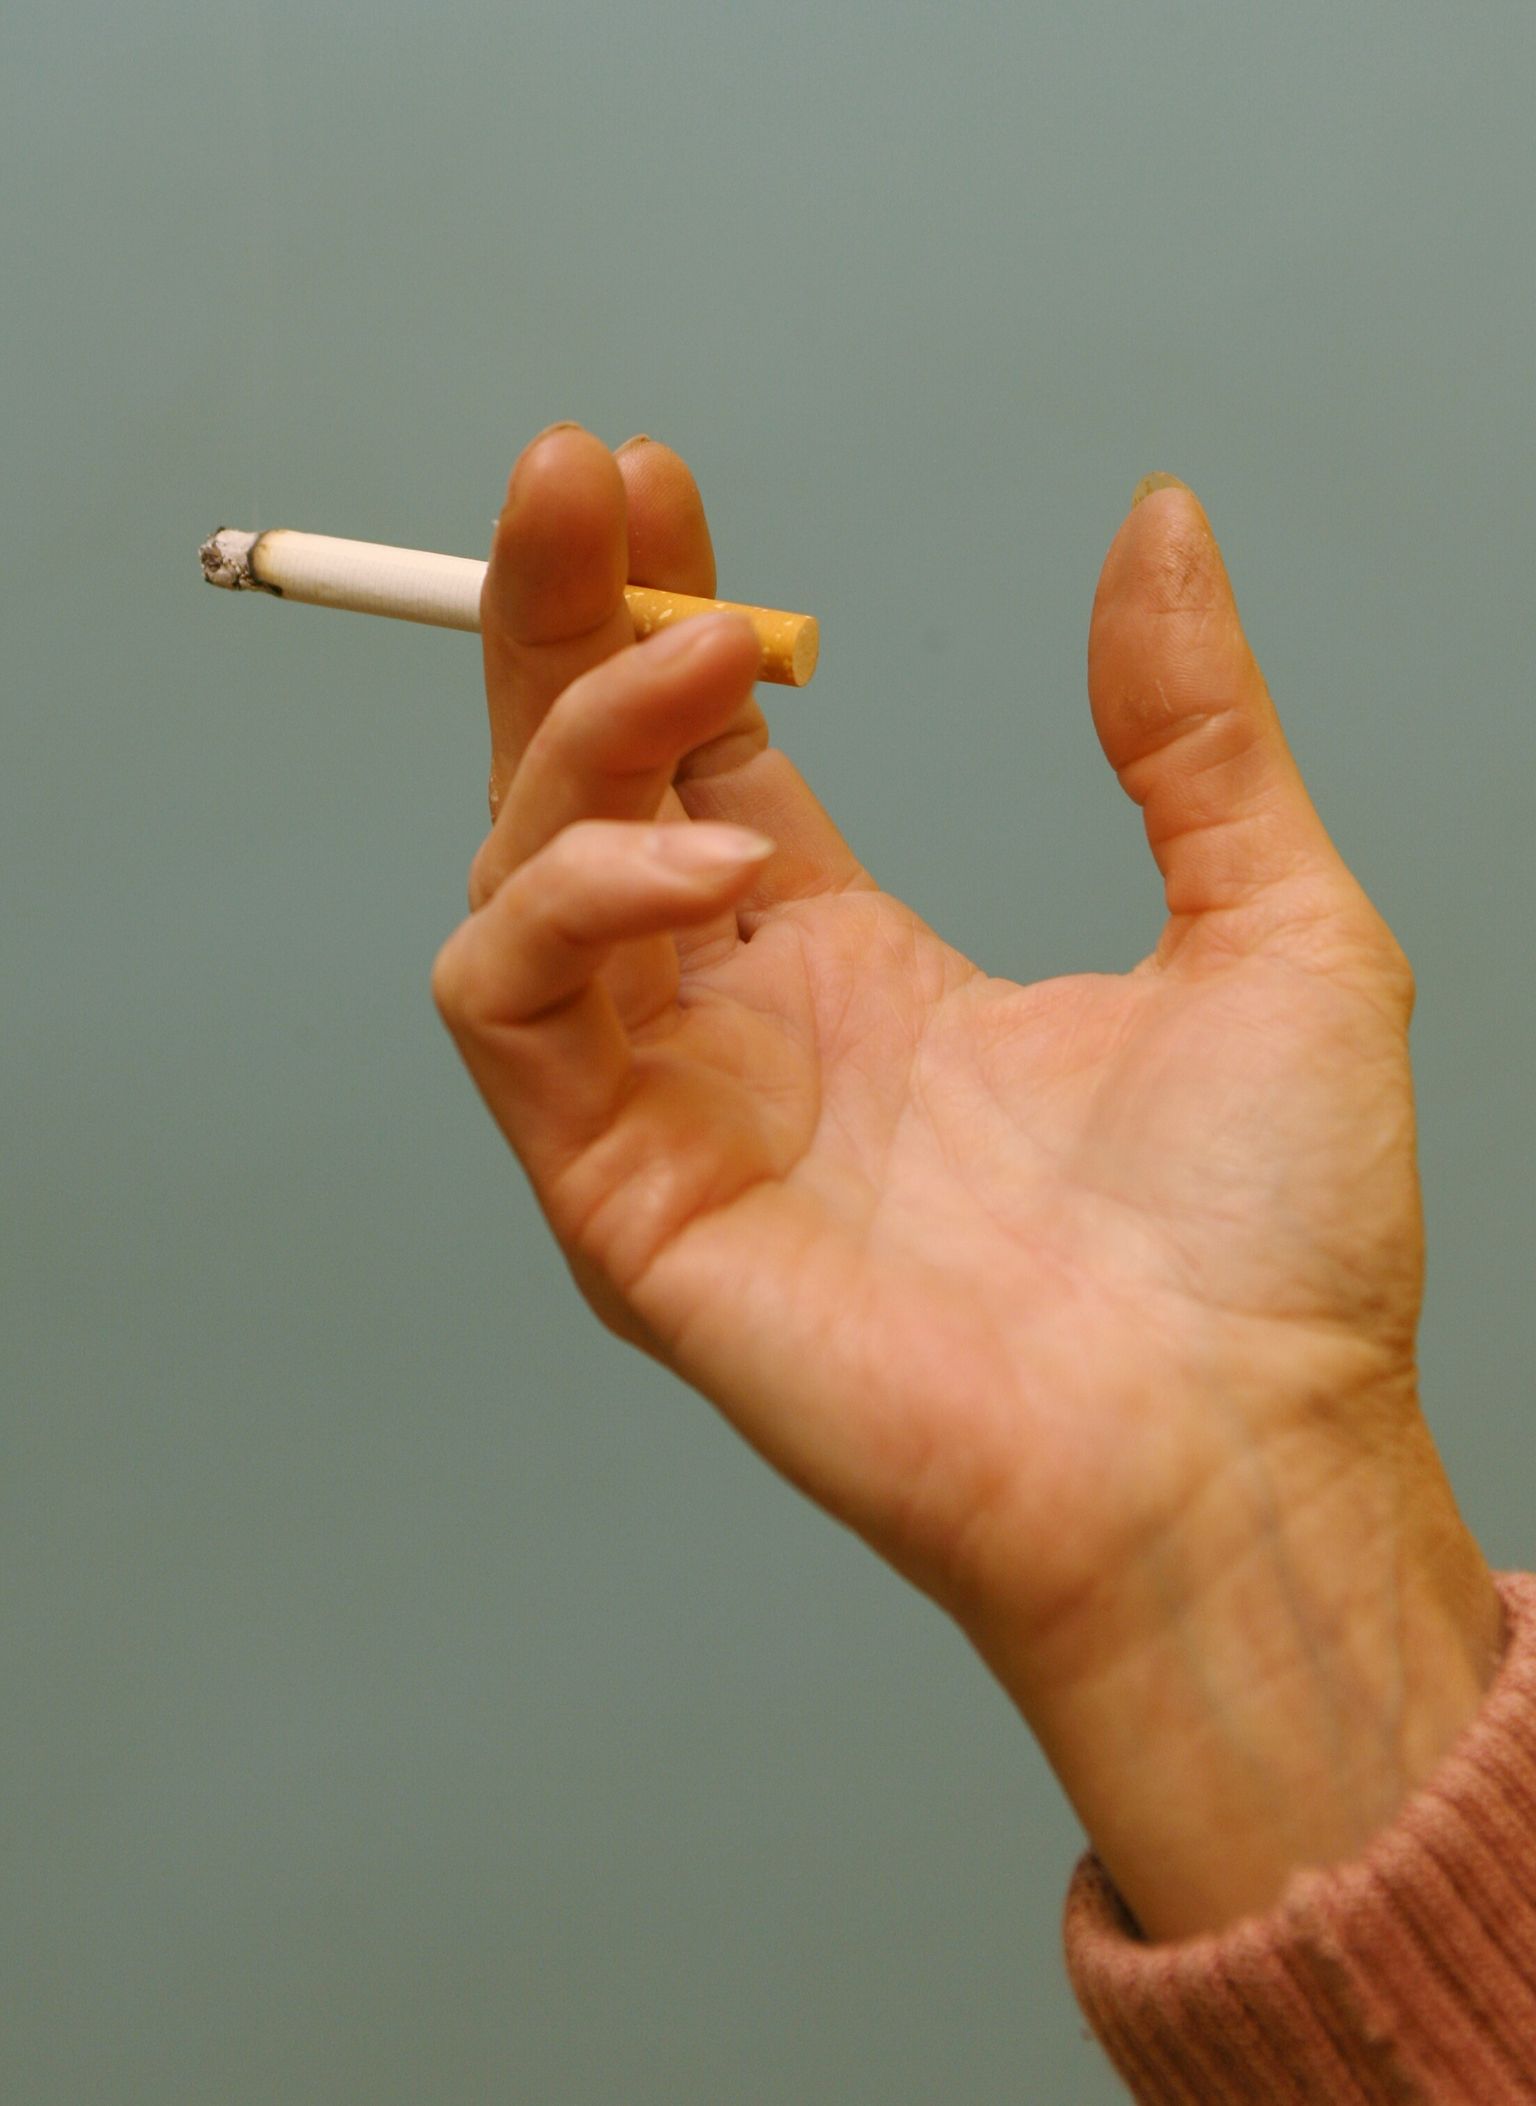 Kopsuvähi tekkes on kõige suuremaks riskiteguriks suitsetamine, mis põhjustab 90% kõigist kopsuvähi juhtudest.